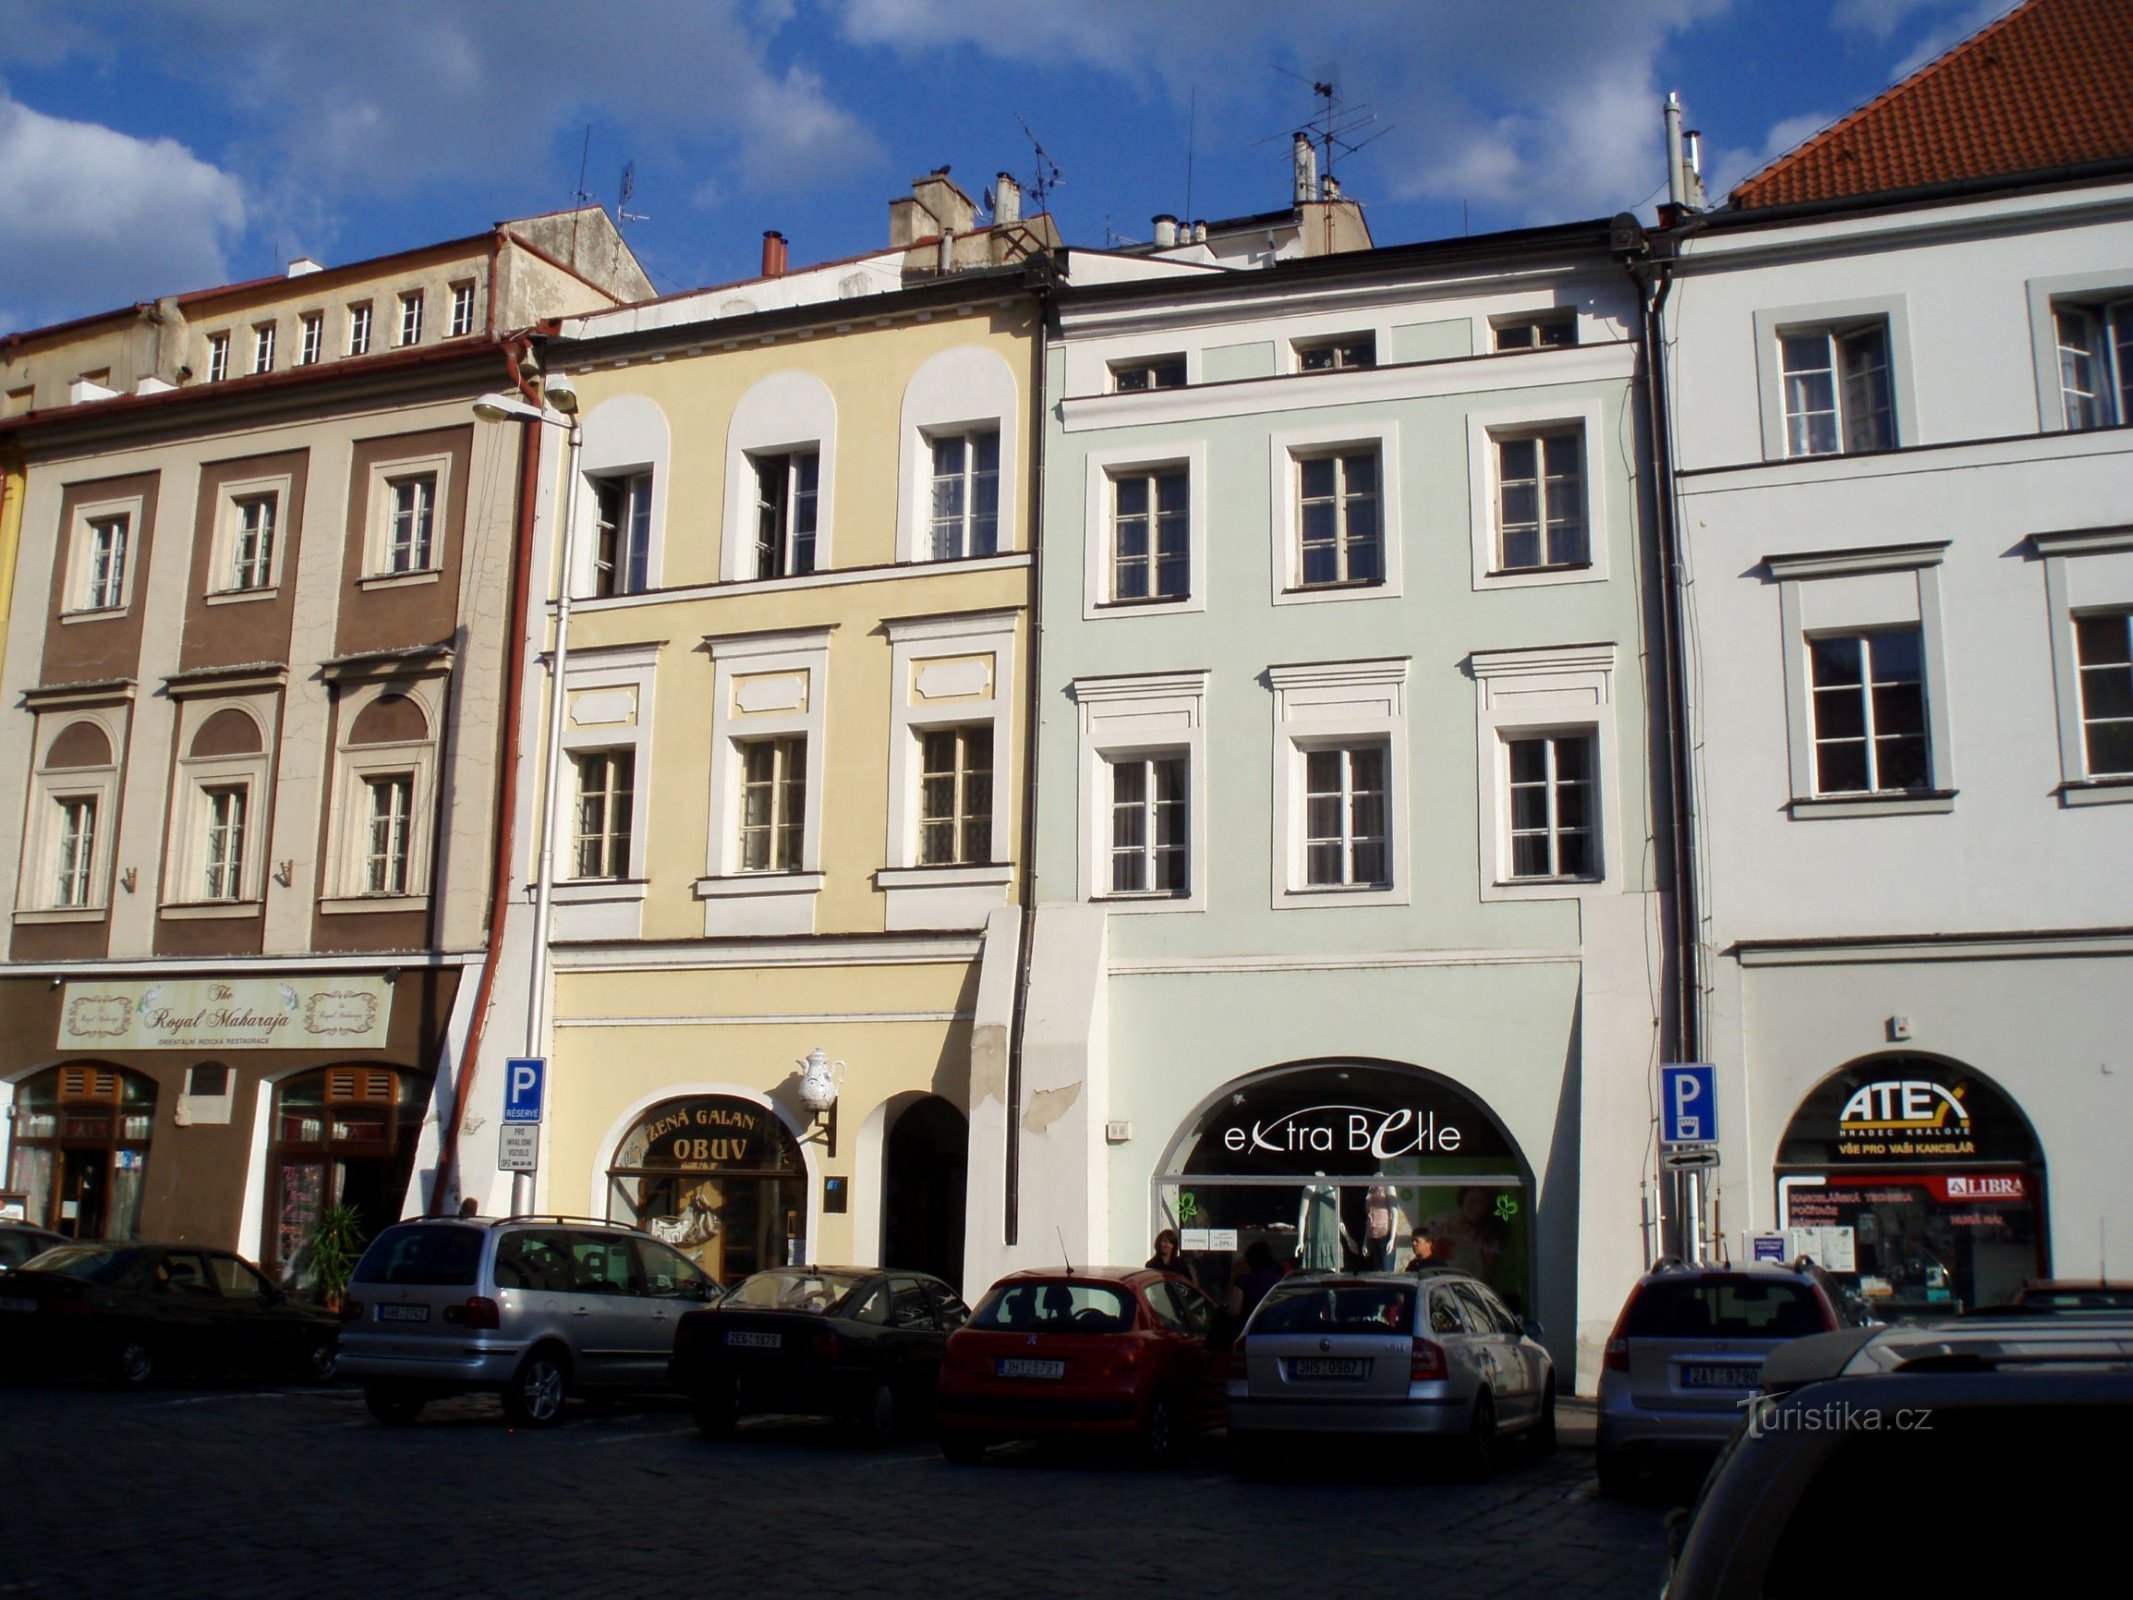 Velké náměstí nr. 23-24 (Hradec Králové, 25.5.2012. april XNUMX)